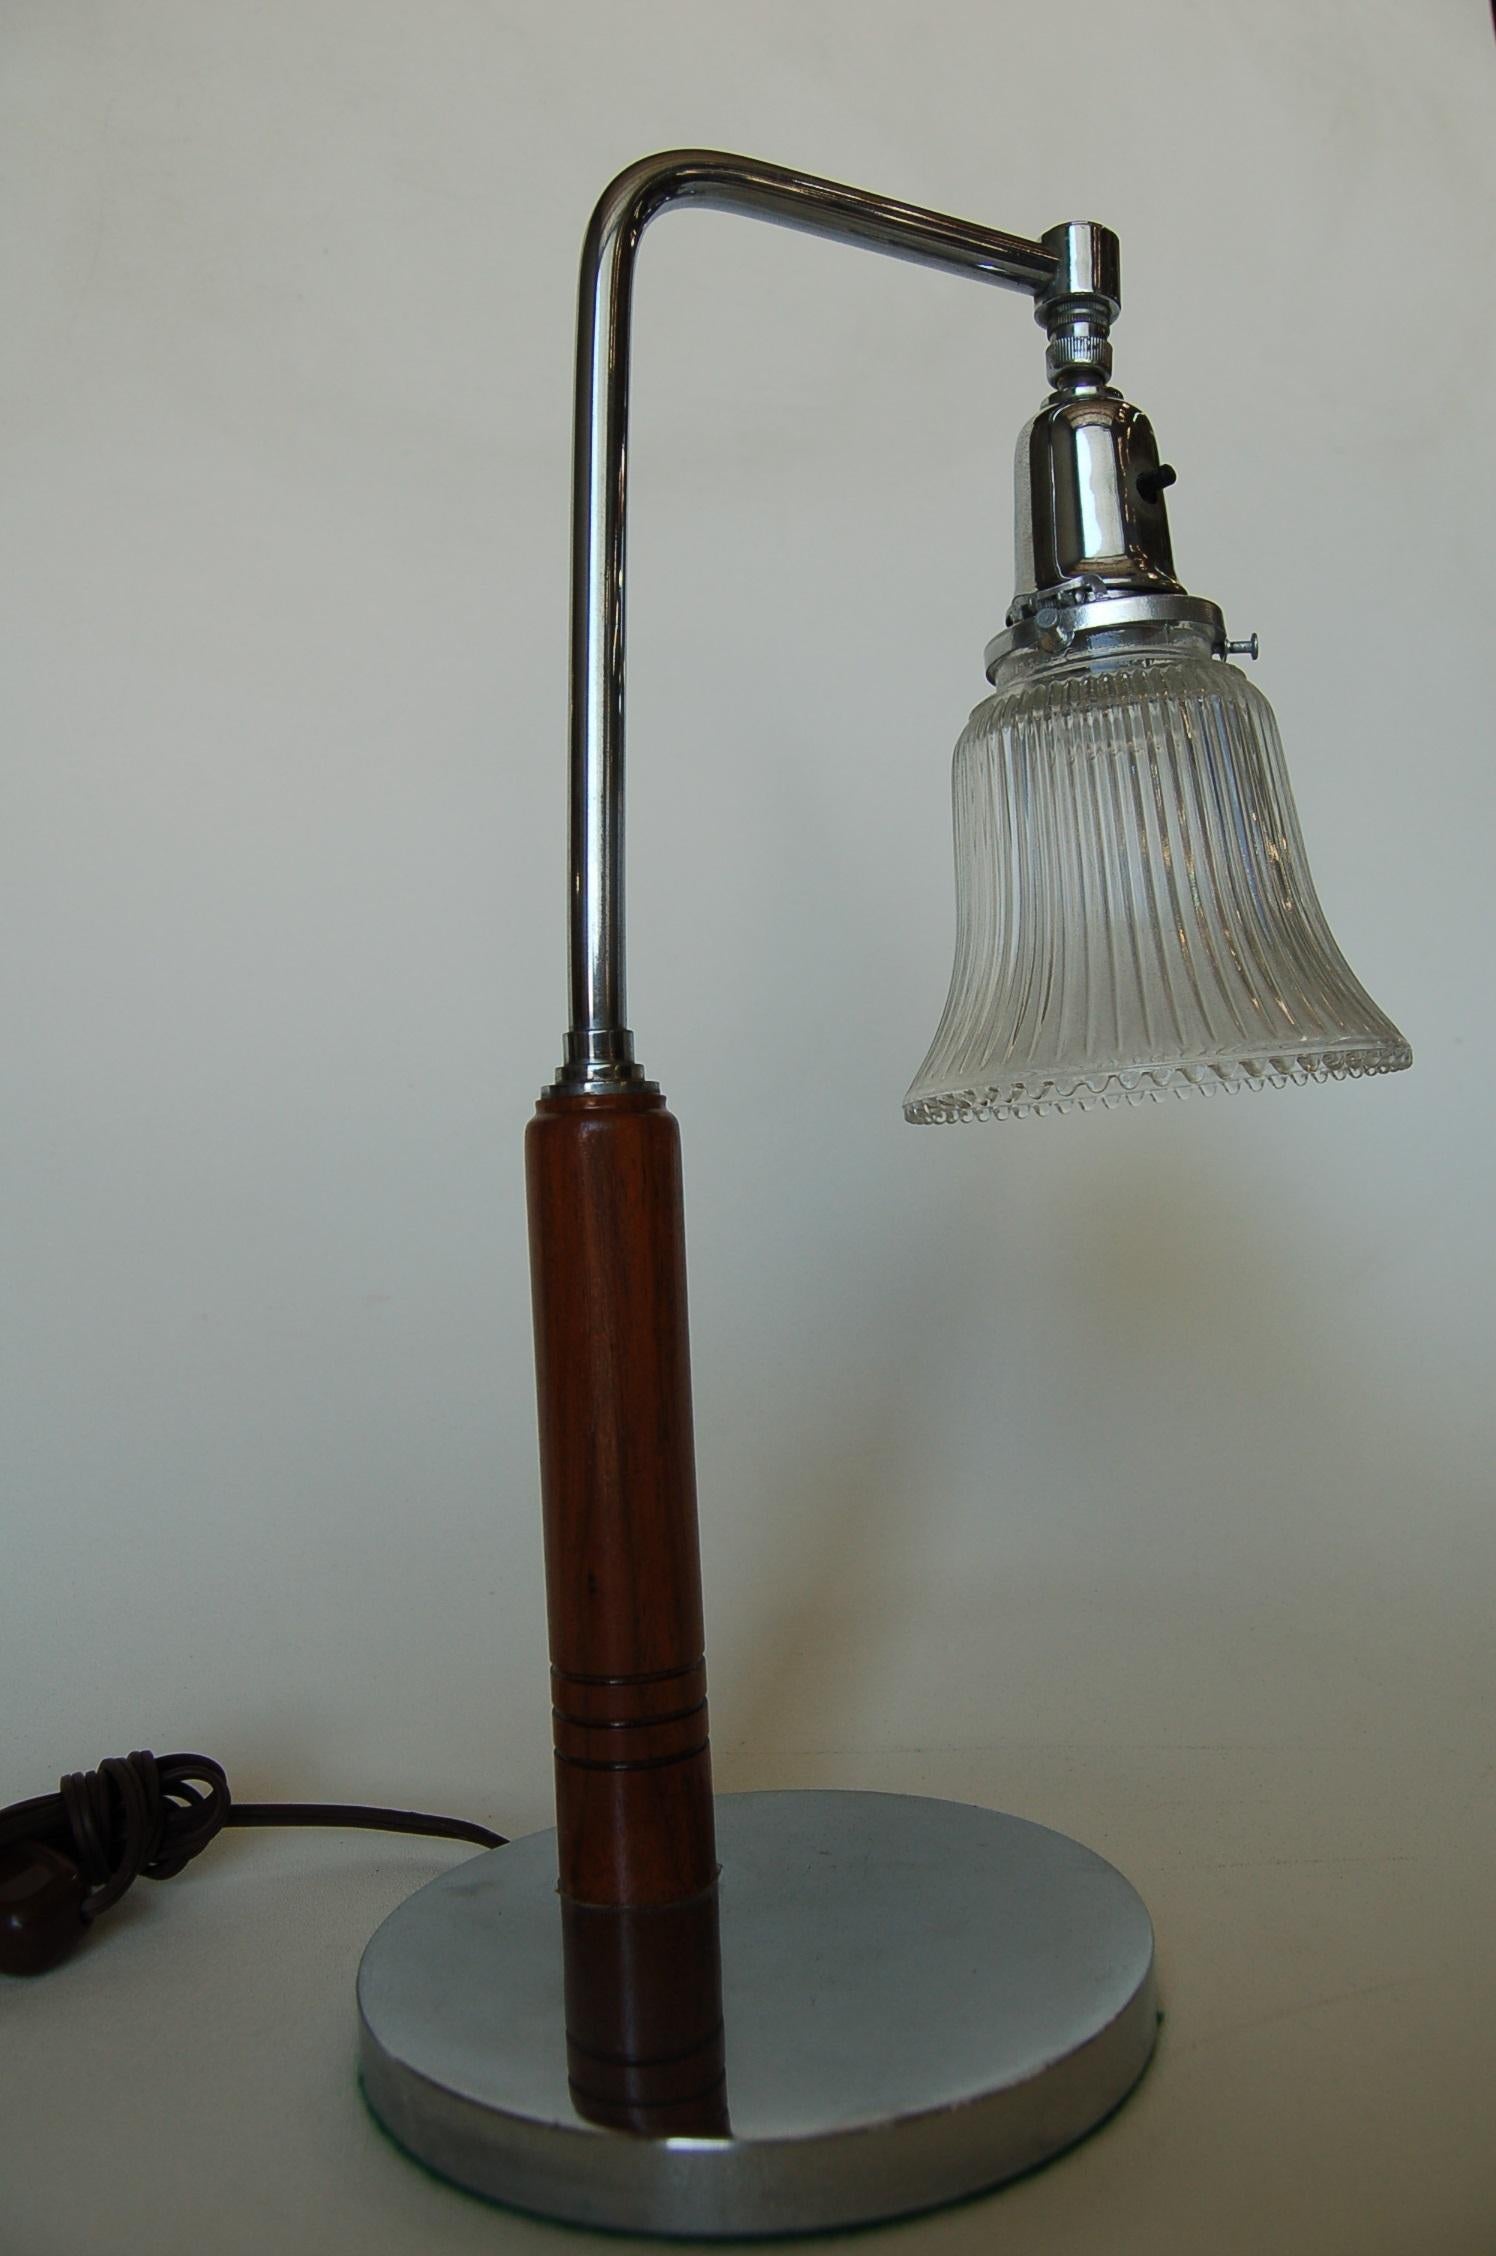 Art Deco Schreibtischlampe Glockenform Glasschirm und Holz und Chrom trimmen.

Maße: 9